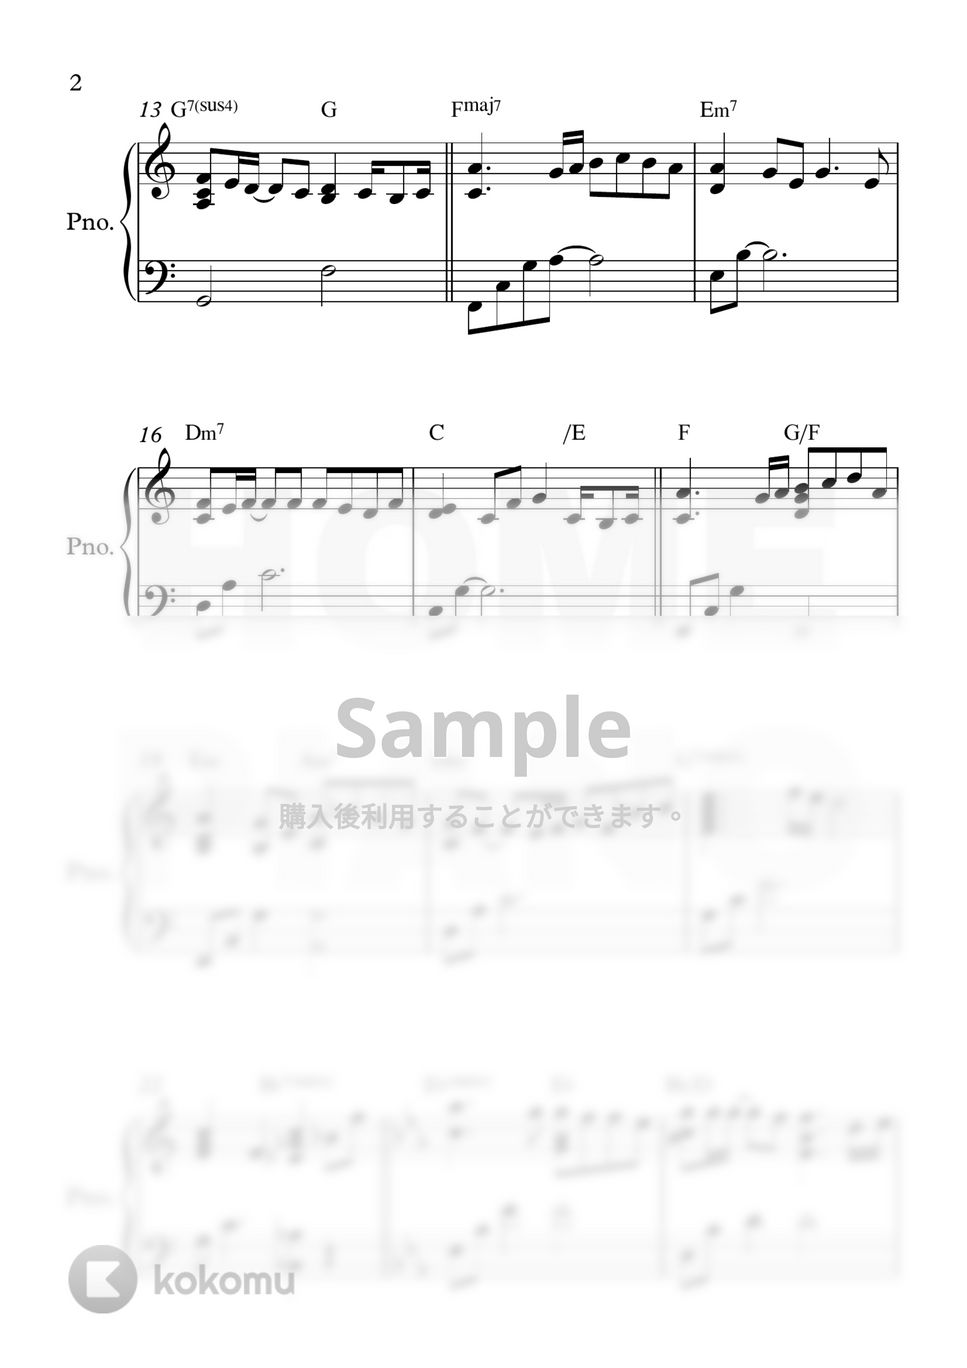 イム・ジェヒョン - I'm a little drunk (中級) by HOME PIANO